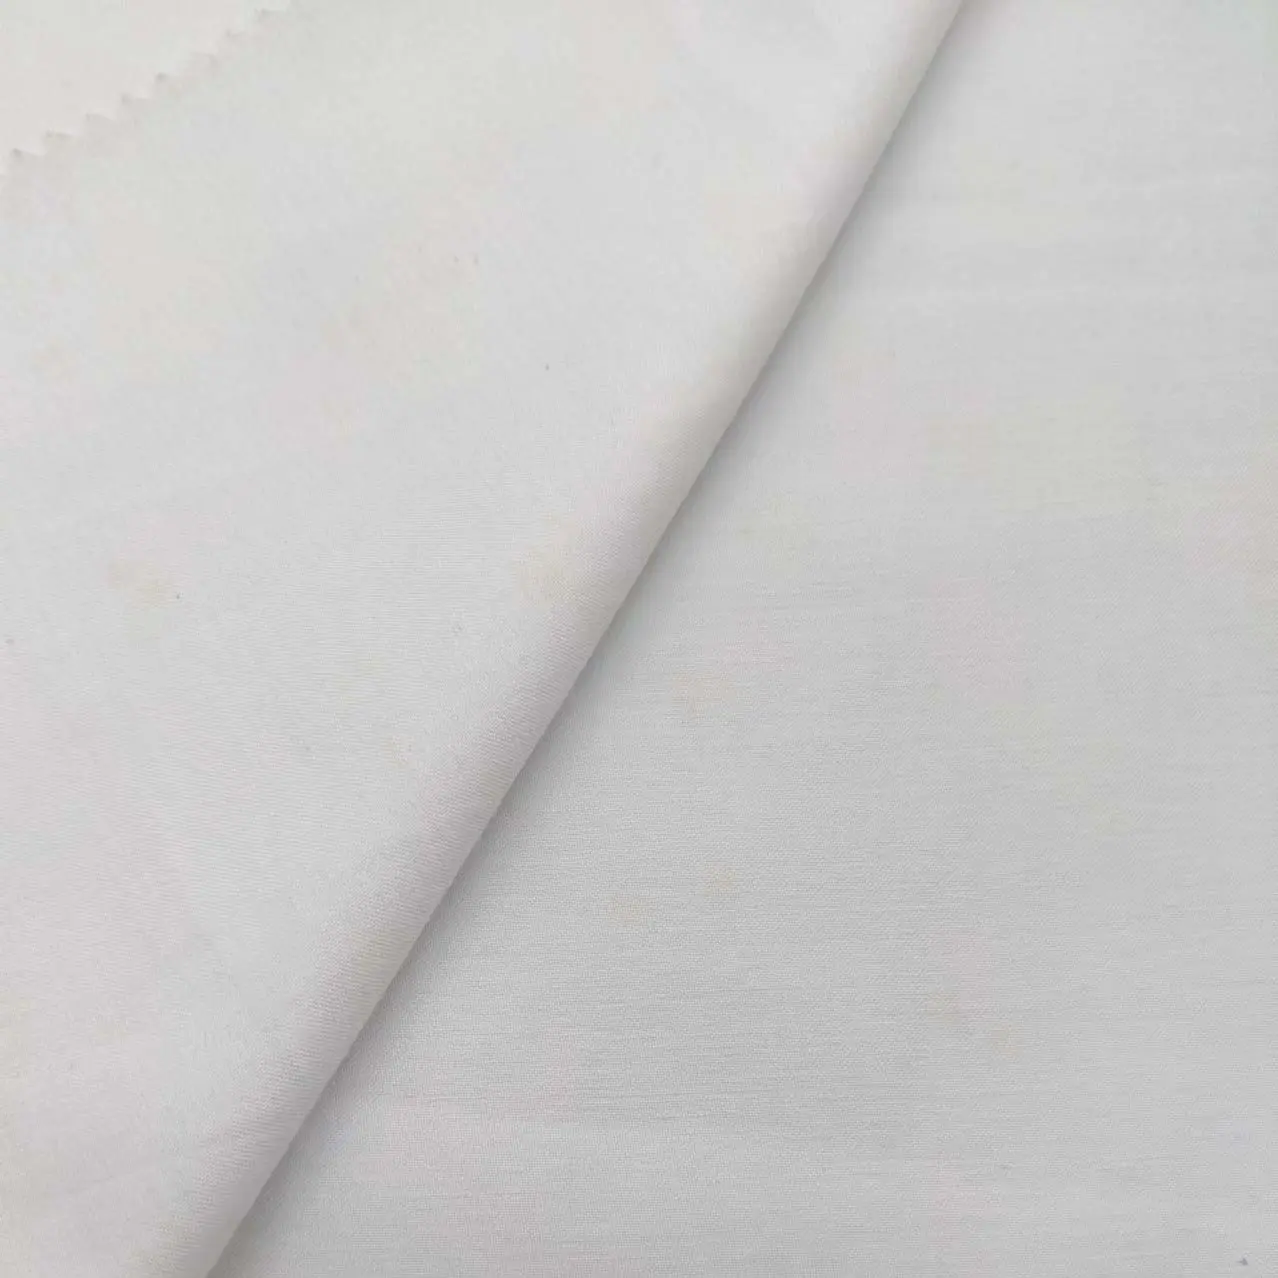 ผ้าซาตินสีขาวผ้าฝ้ายโพลี50dx50s ชุดเครื่องนอน